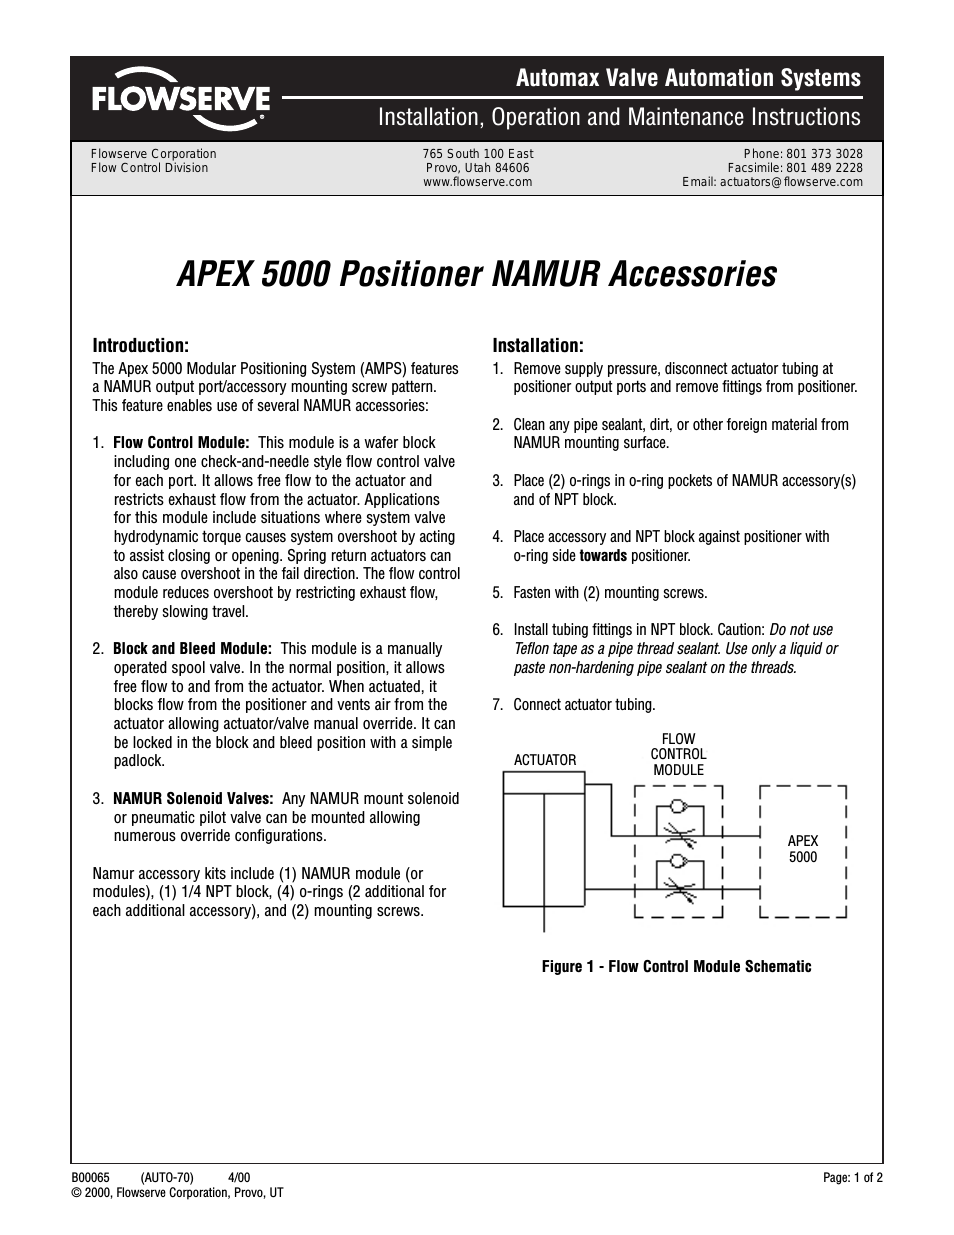 APEX 5000 Positioner NAMUR Accessories